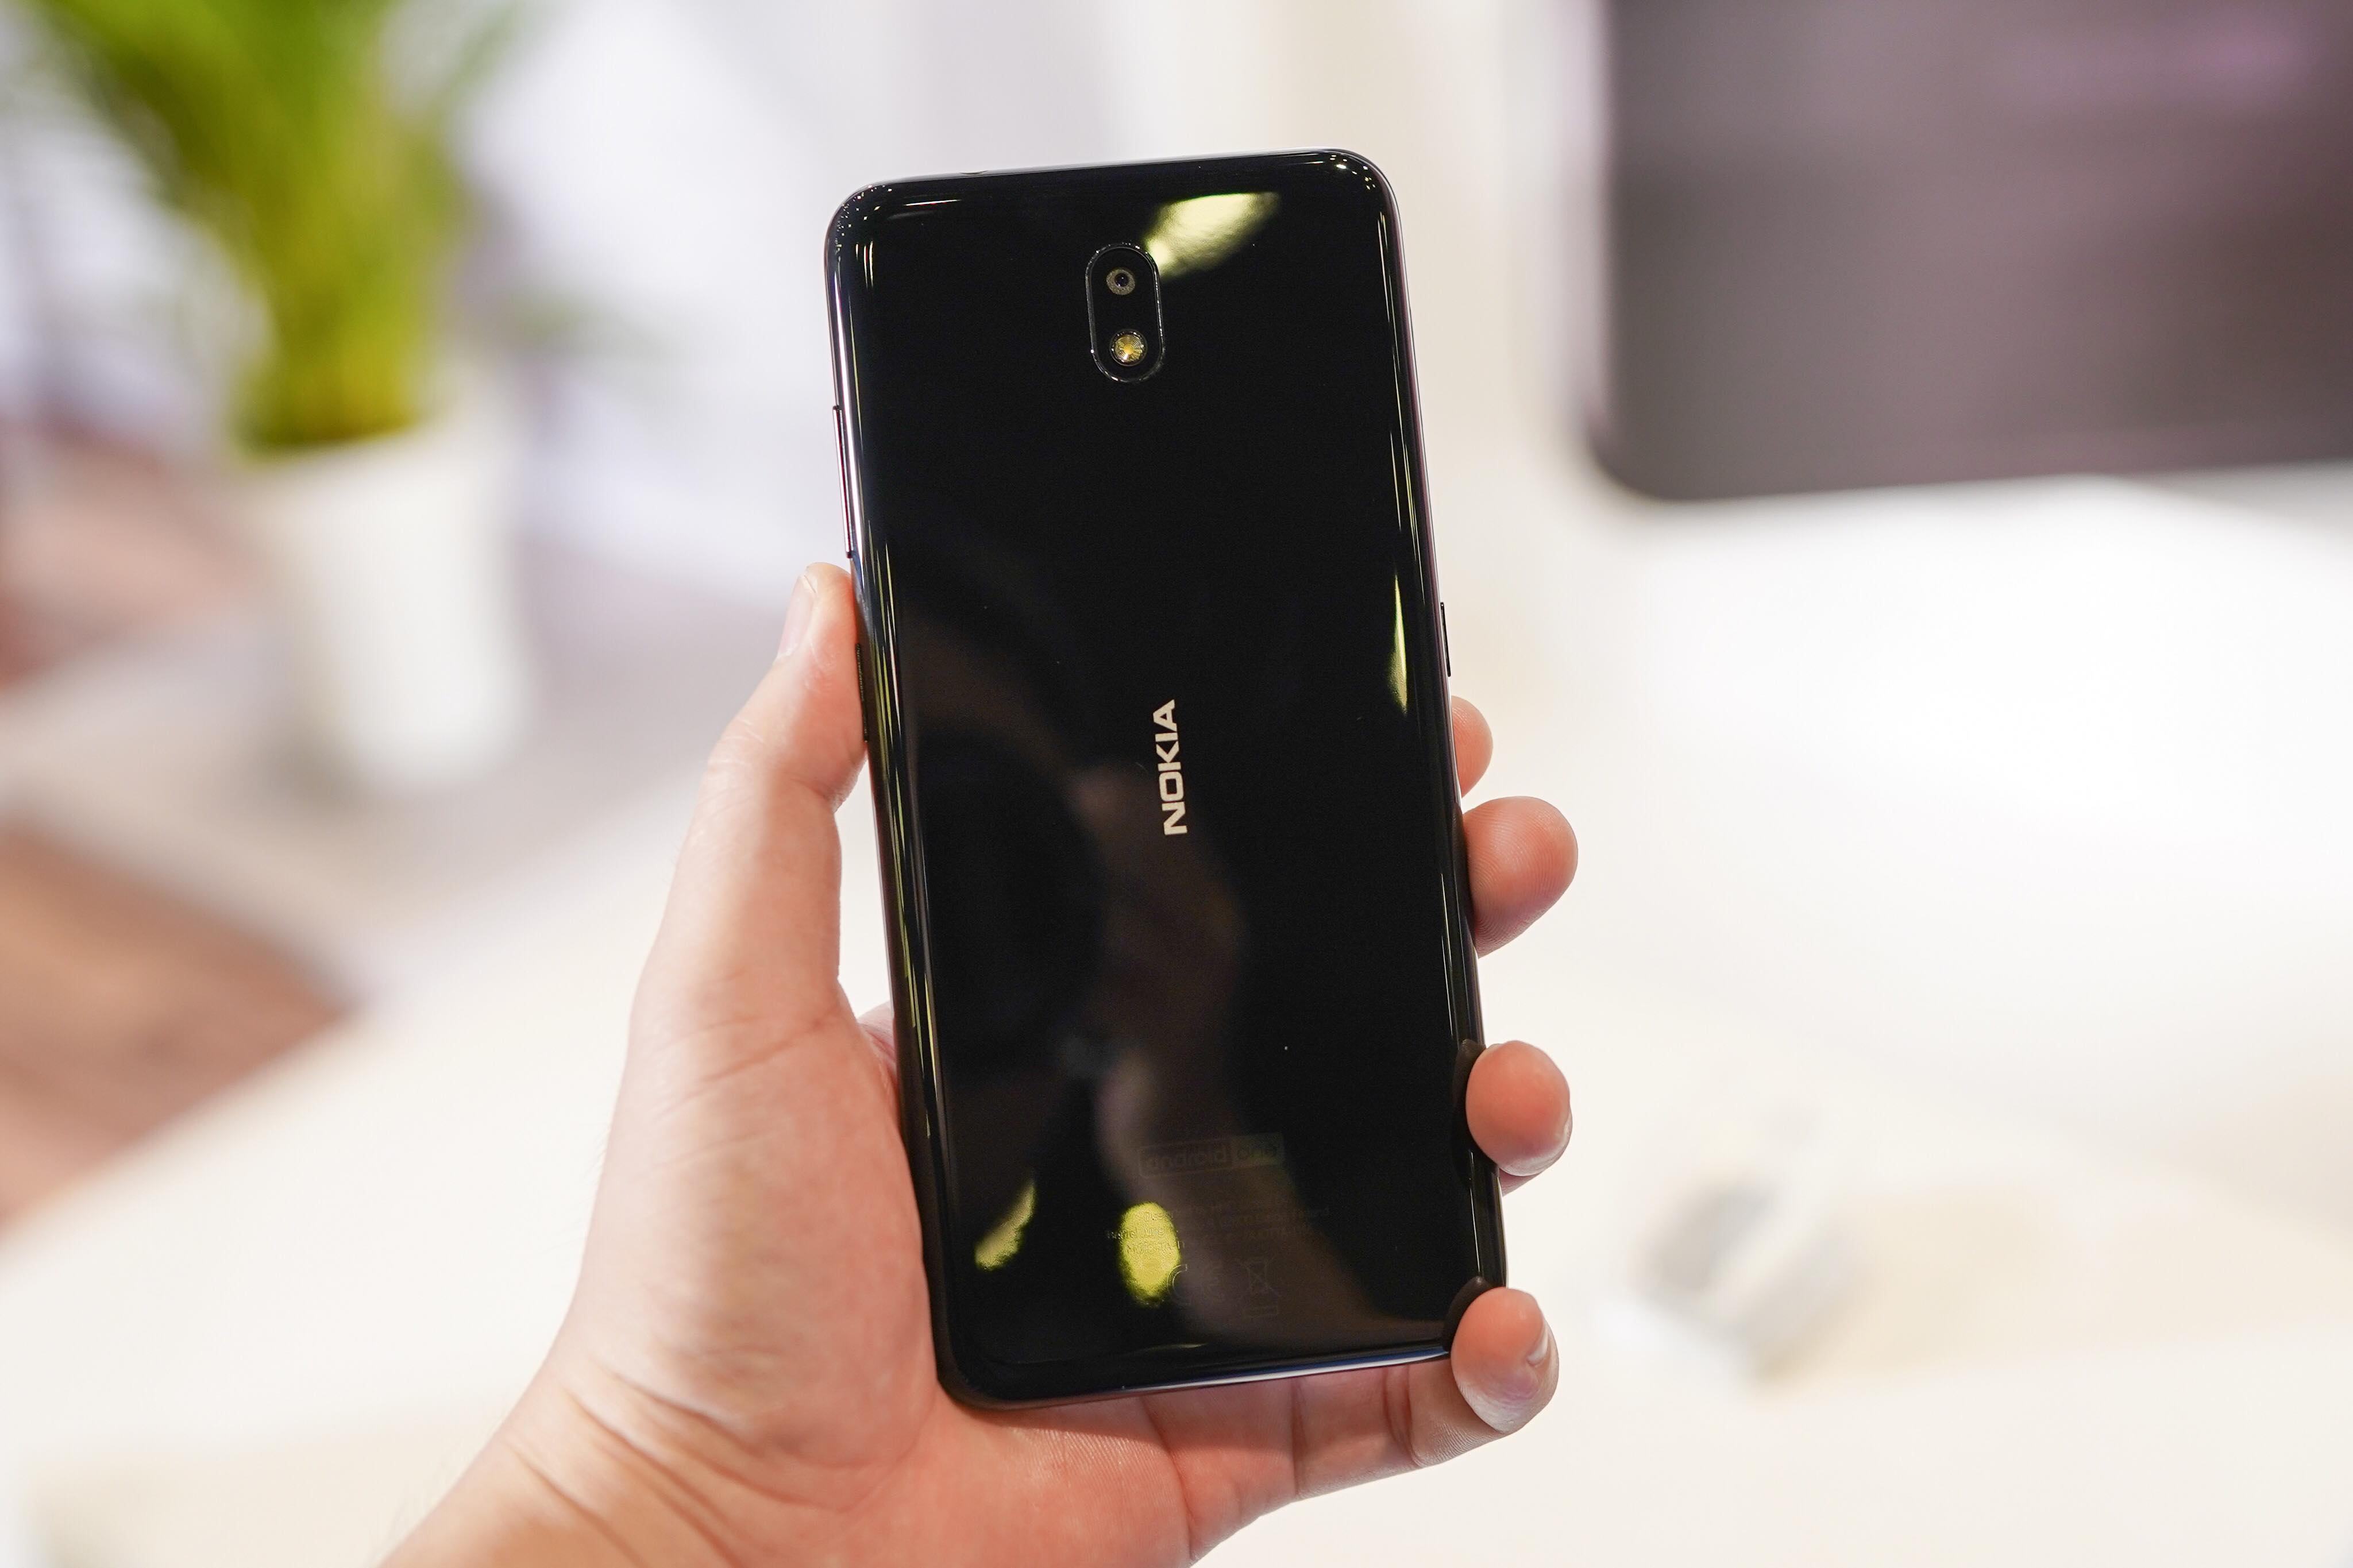 Nokia 3.2 ra mắt thị trường Việt: màn hình lớn, thời lượng pin 2 ngày, giá từ 2,990,000 VND